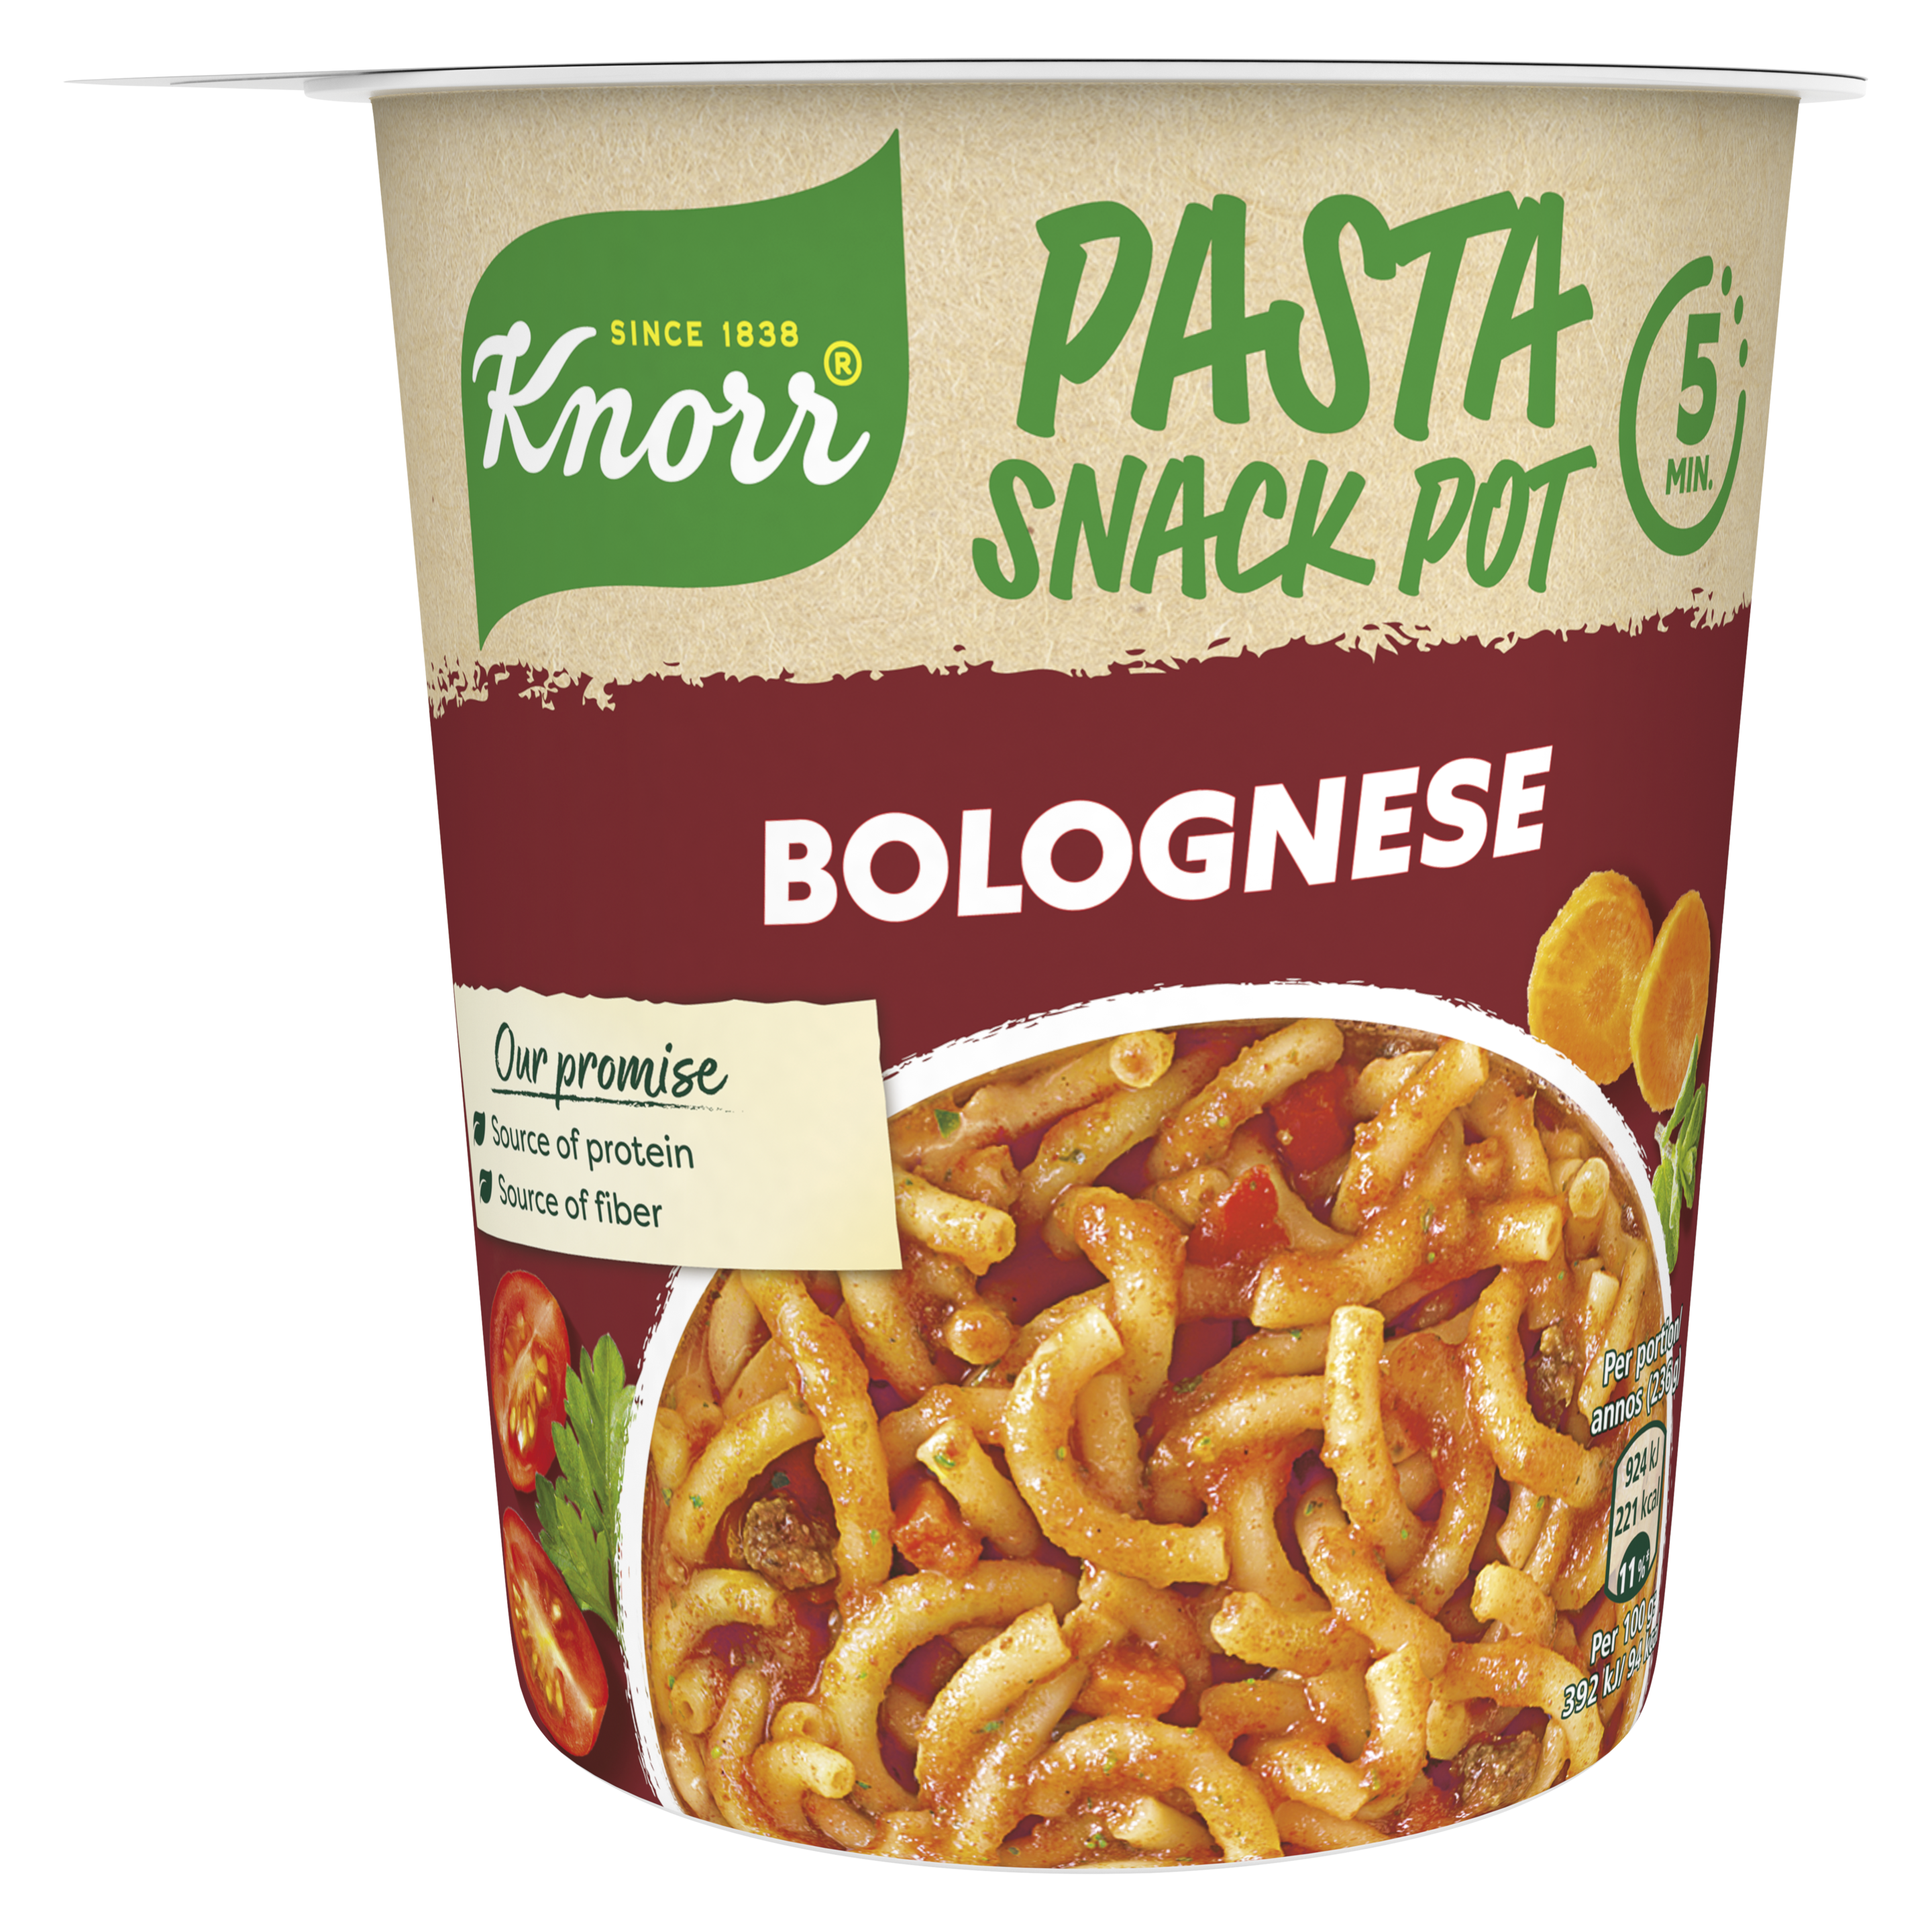 Snack Pot Spaghetti Bolognese